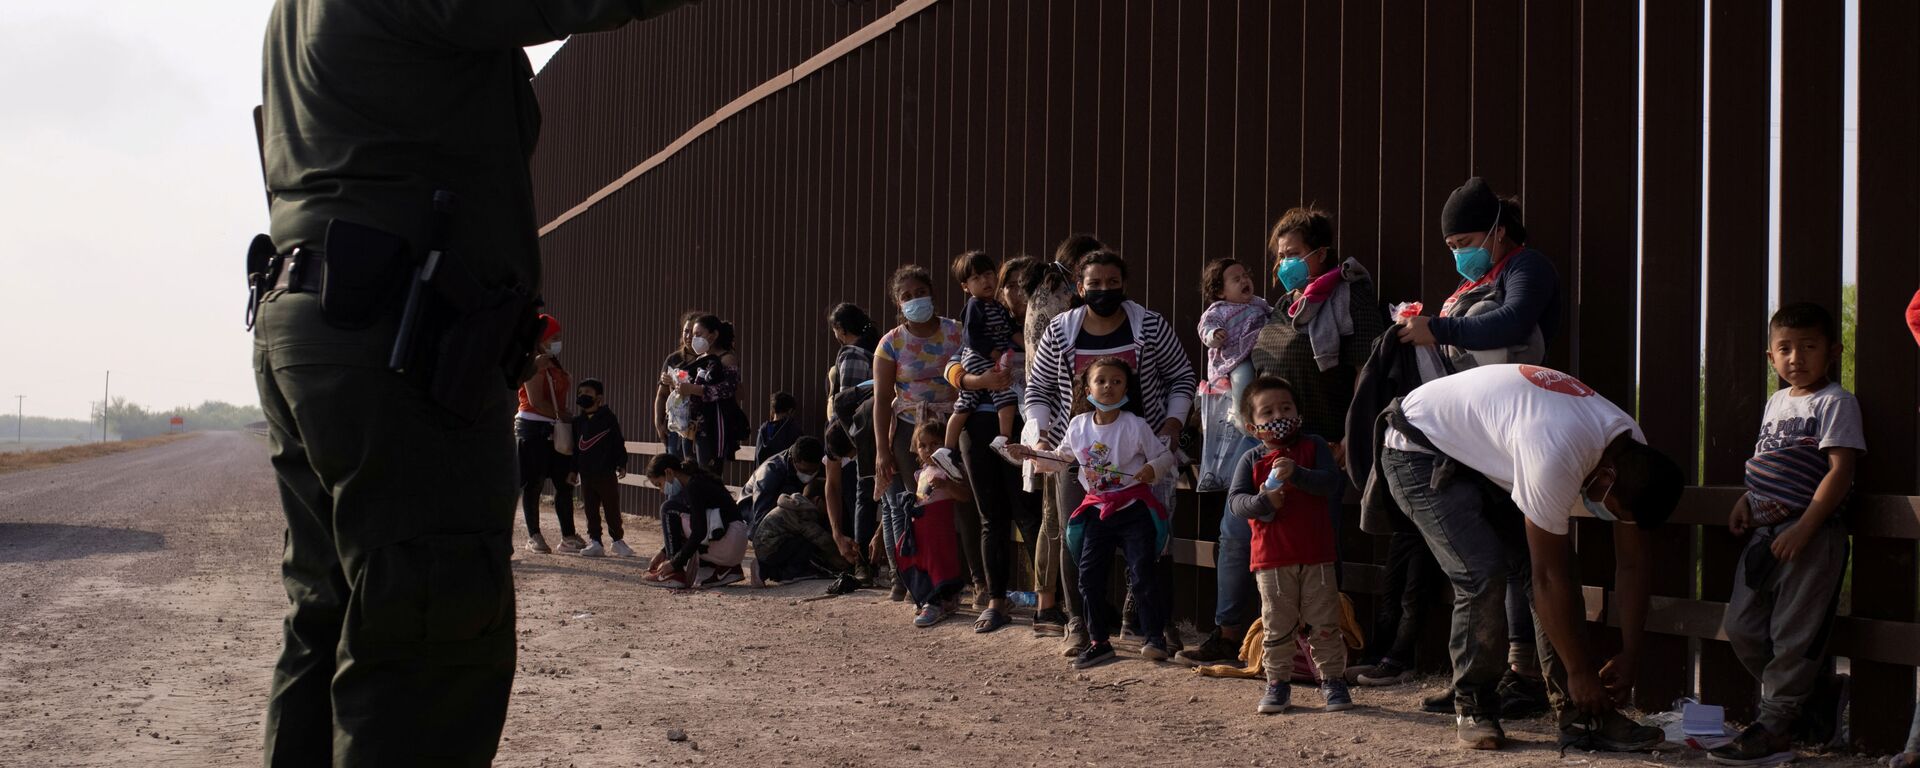 Meksika'dan tekneyle Rio Grande nehrini geçerek ABD sınırına varan göçmenleri duvar önünde sıraya dizen ABD'li federal sınır koruma ajanları (Penitas, Teksas) - Sputnik Türkiye, 1920, 22.03.2021